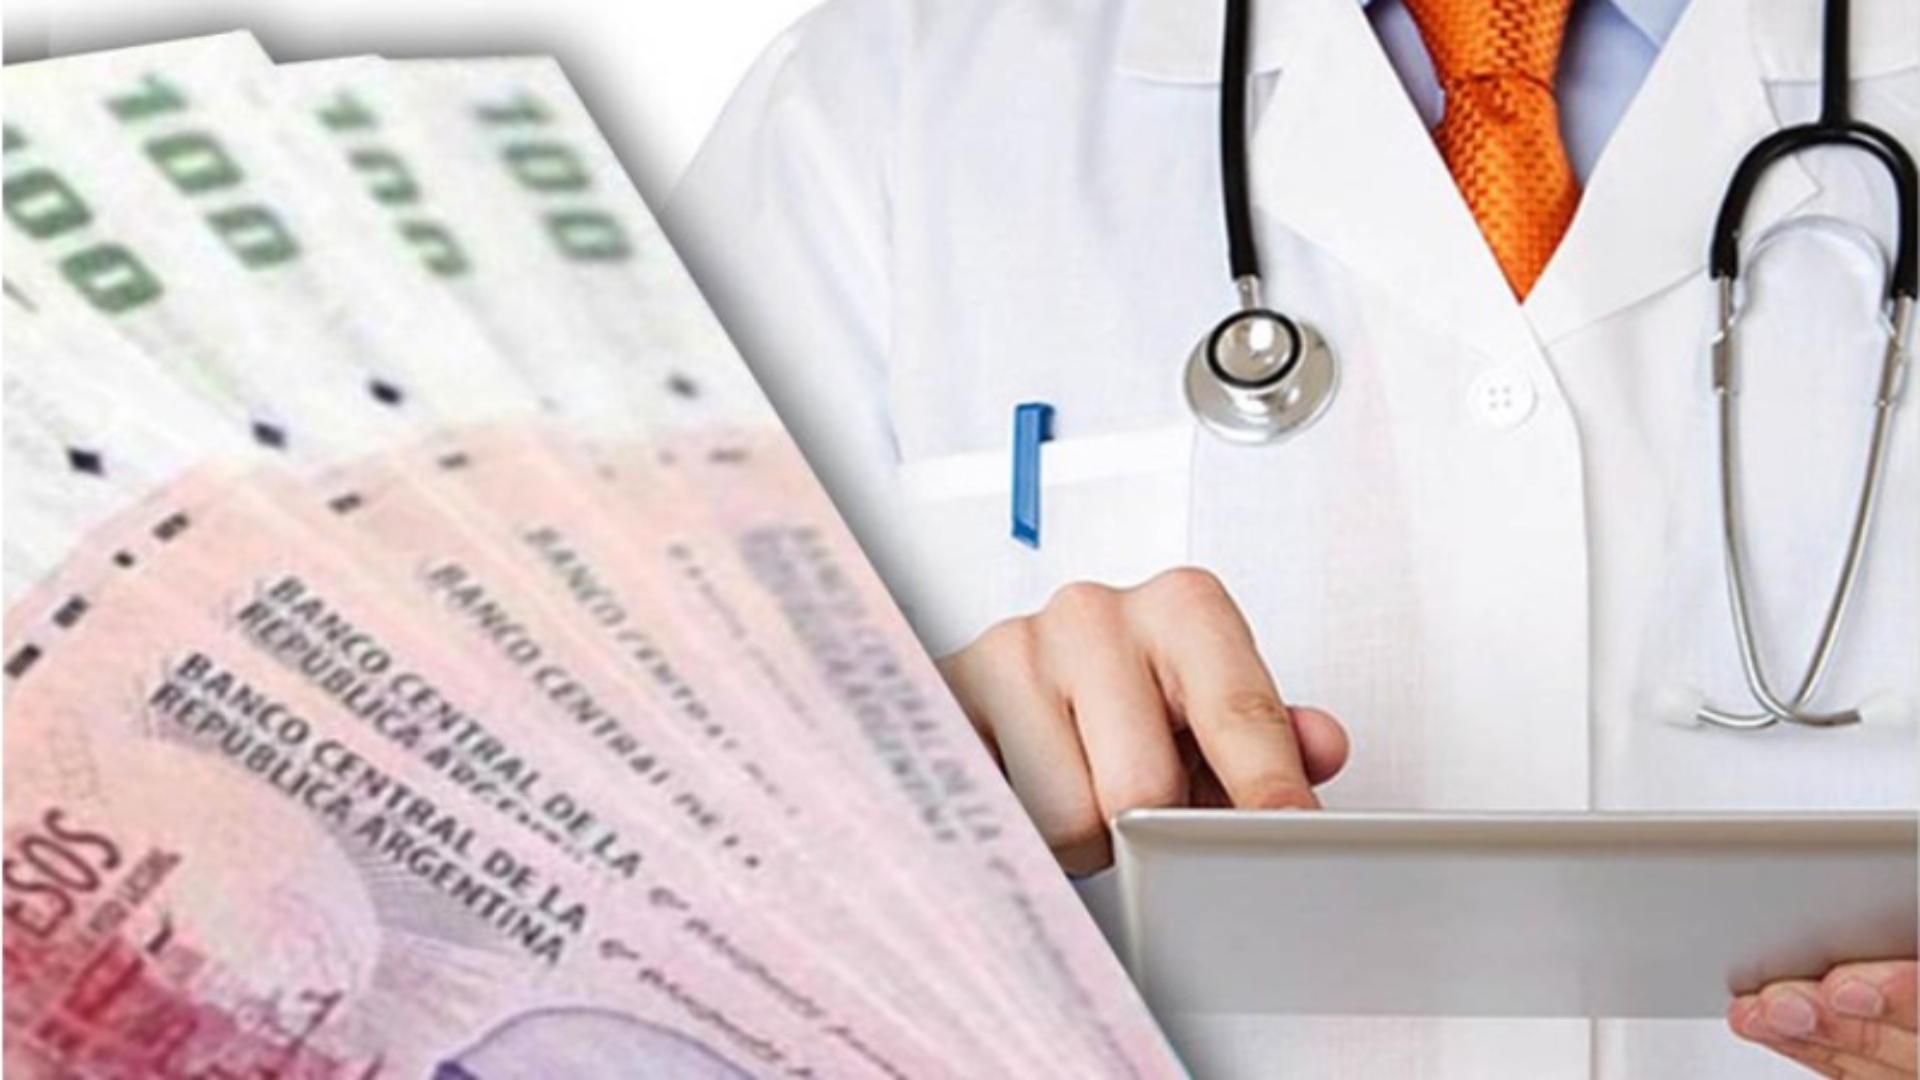 “Medicina privata” in crisi di finanziamento